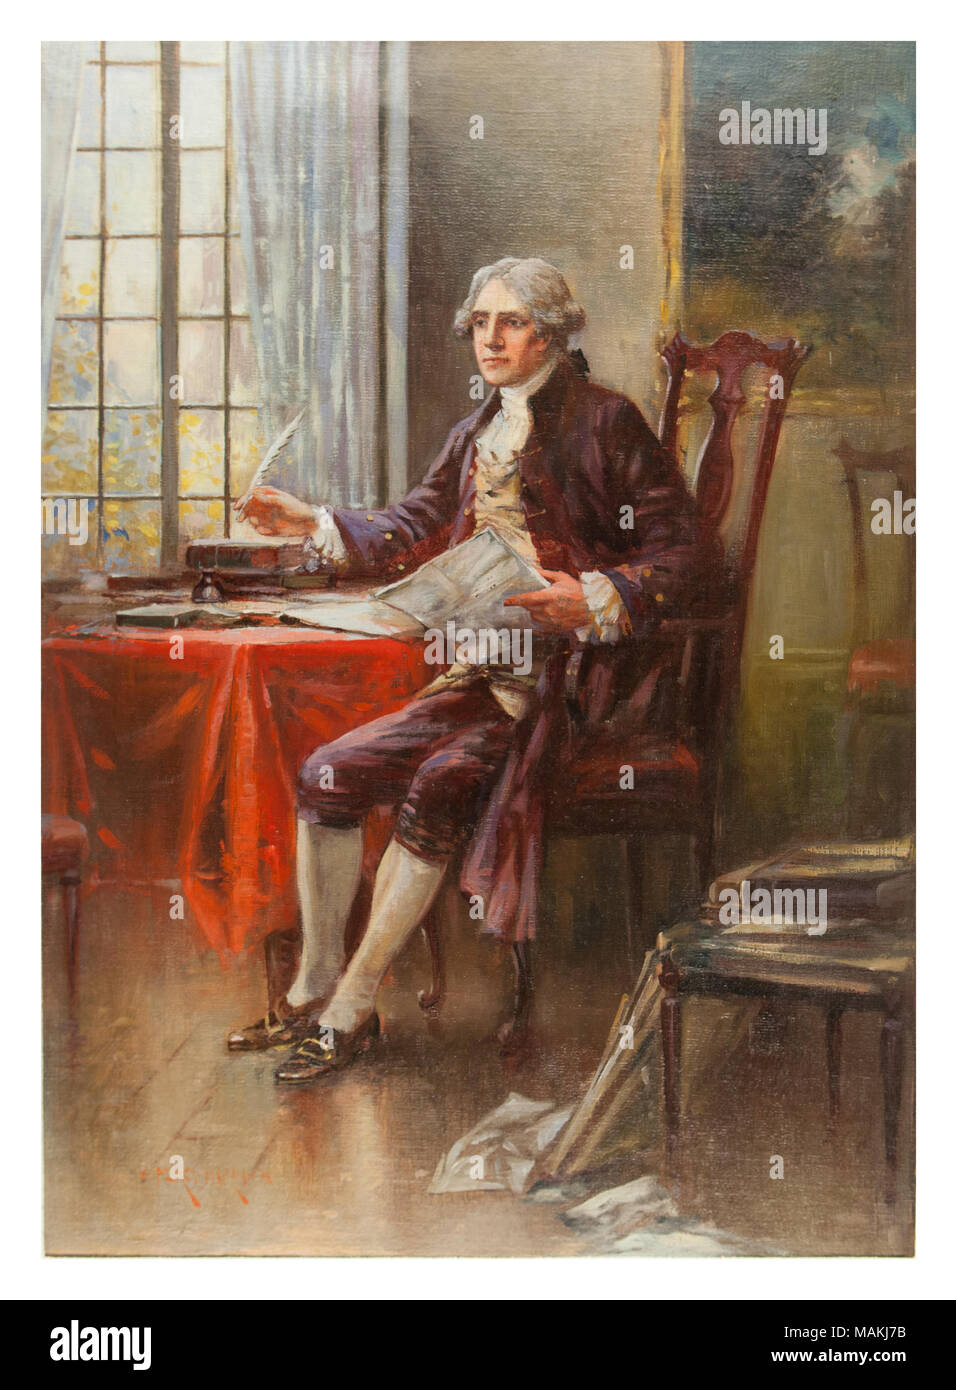 Öl auf Leinwand Portrait von Thomas Jefferson von Edward Percy Moran 1916 gemalt. Titel: Thomas Jefferson von Edward Percy Moran. 1916. Edward Percy Moran Stockfoto